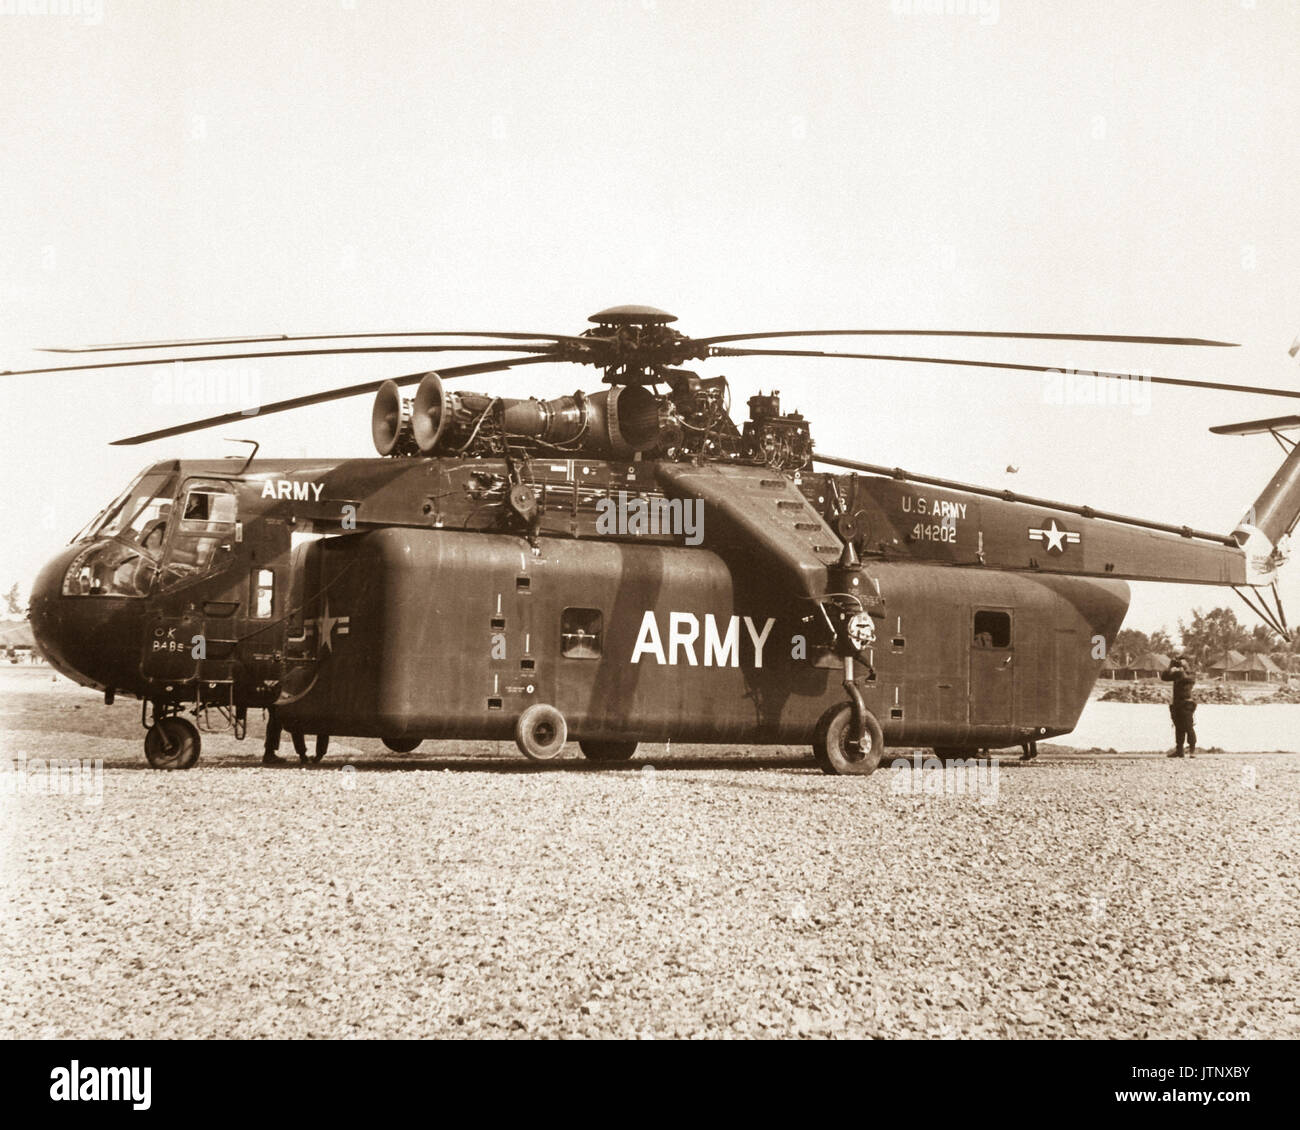 L'une des pièces uniques d'équipement apportés au Vietnam par la Division de cavalerie (Airmobile), de l'armée américaine, est le ciel immense Crane CH-54D'un hélicoptère qui peut soulever des charges énormes. (USIA) DATE EXACTE INCONNUE SHOT #  FICHIER NARA : 306 MVP-guerres et conflits Guichet emplois BOOK #  : 400 Banque D'Images